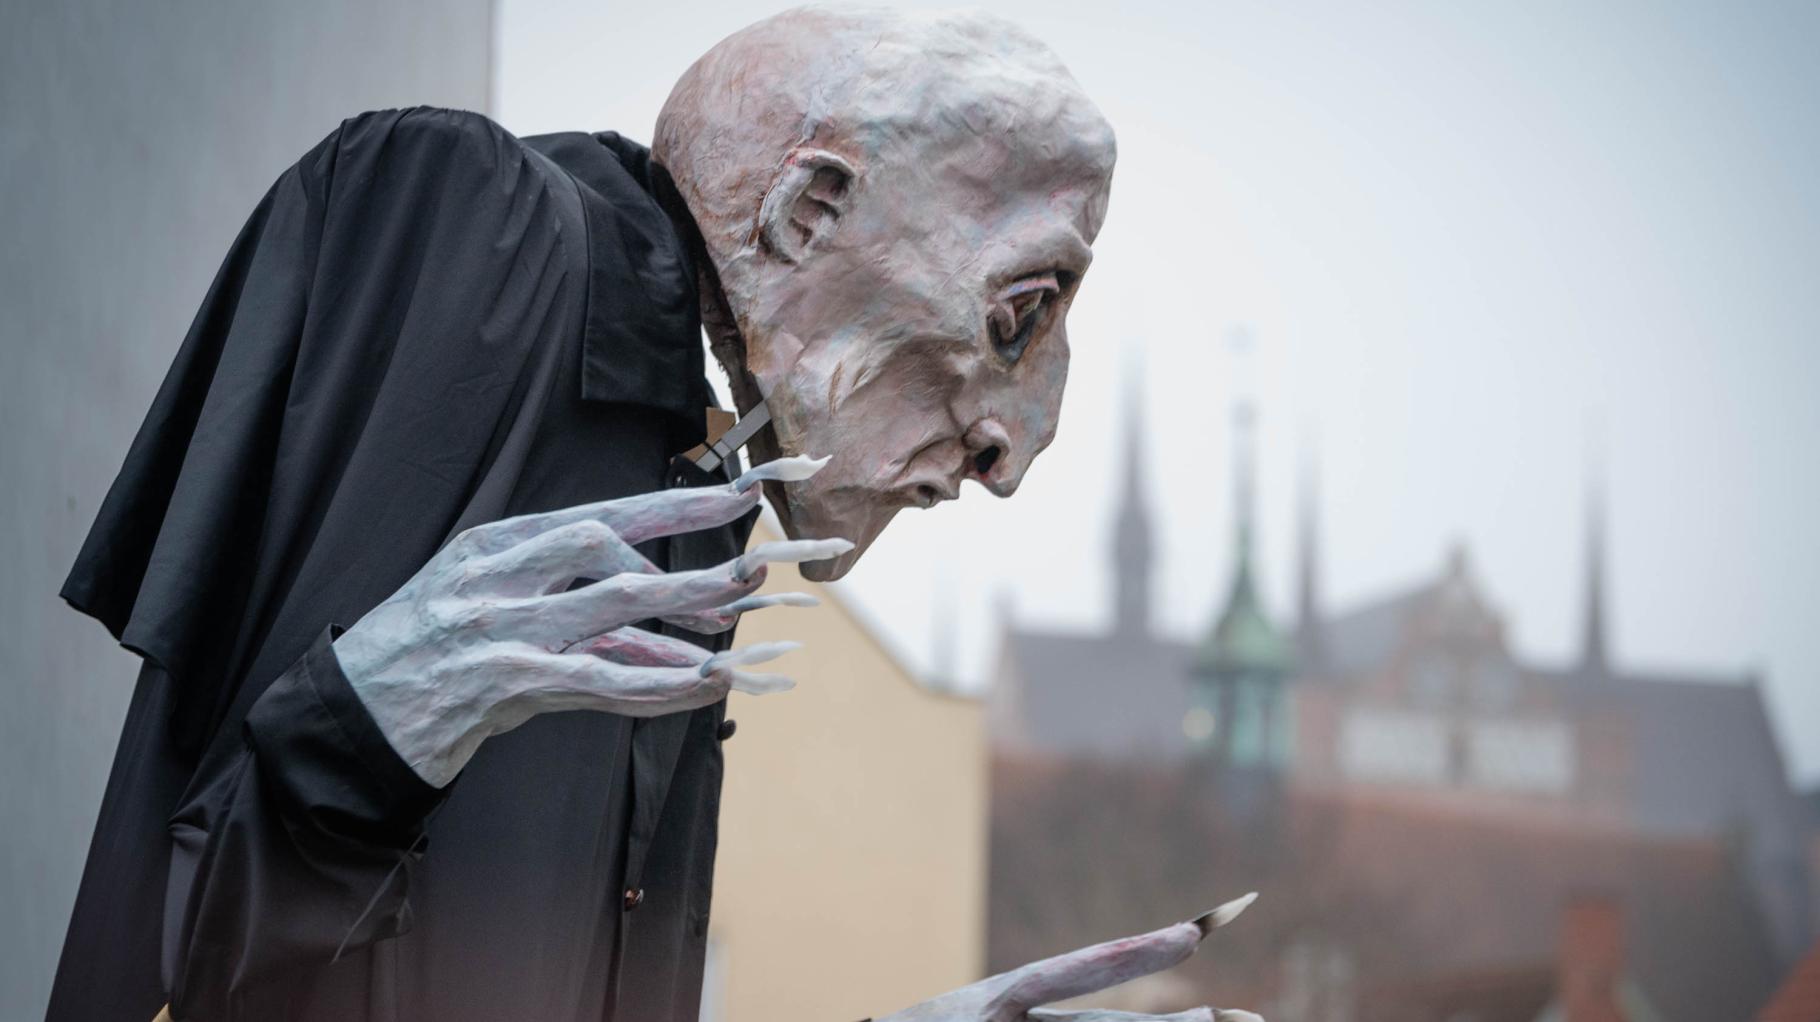 Straßenspektakel um einen Vampir – so verbreitet Nosferatu wohligen Grusel in Wismar